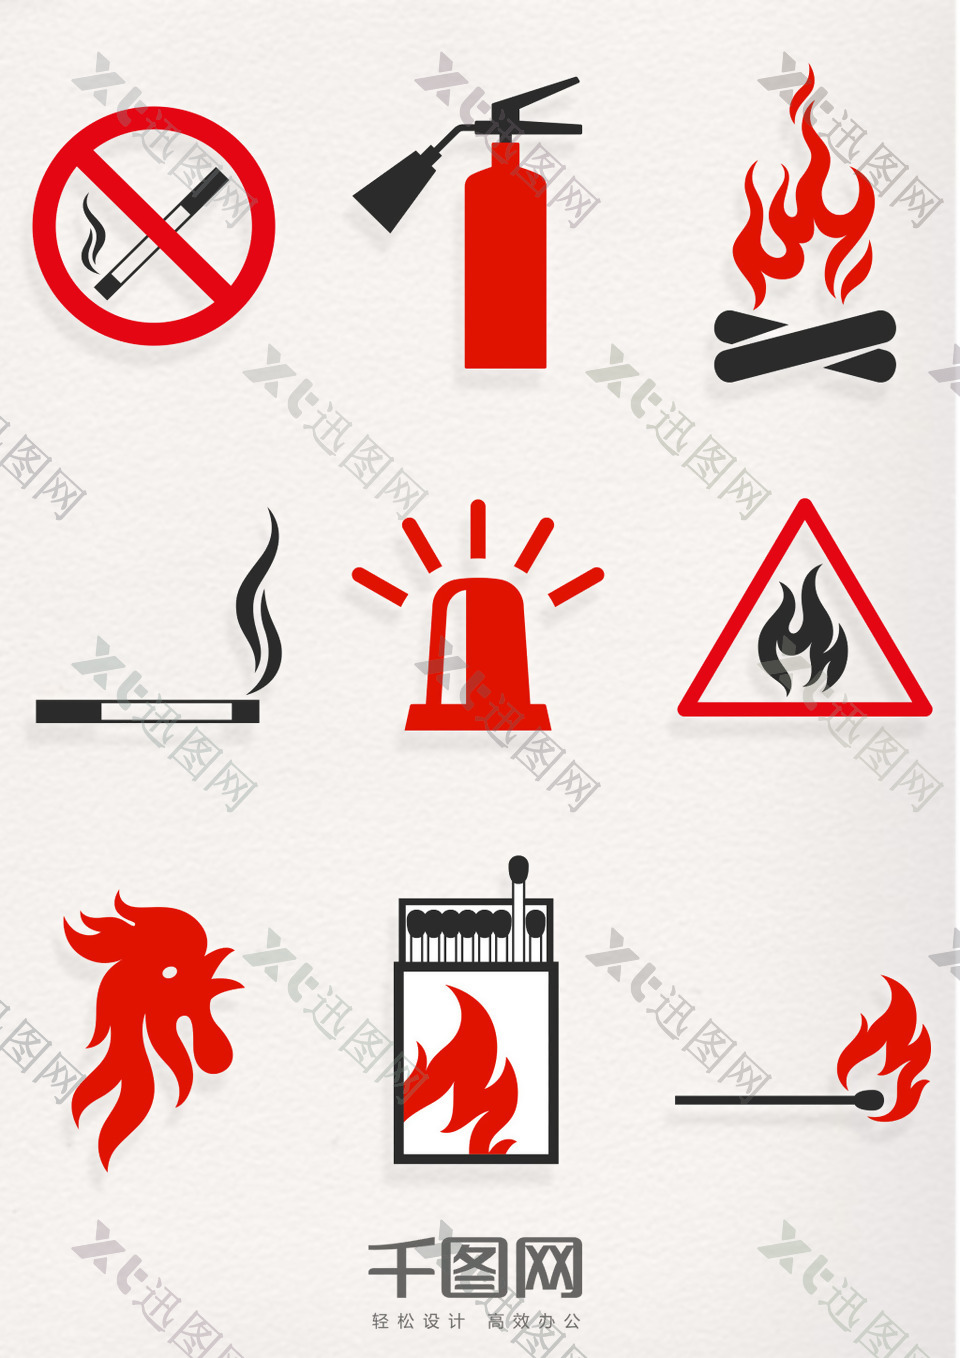 中国消防安全日消防创意设计素材